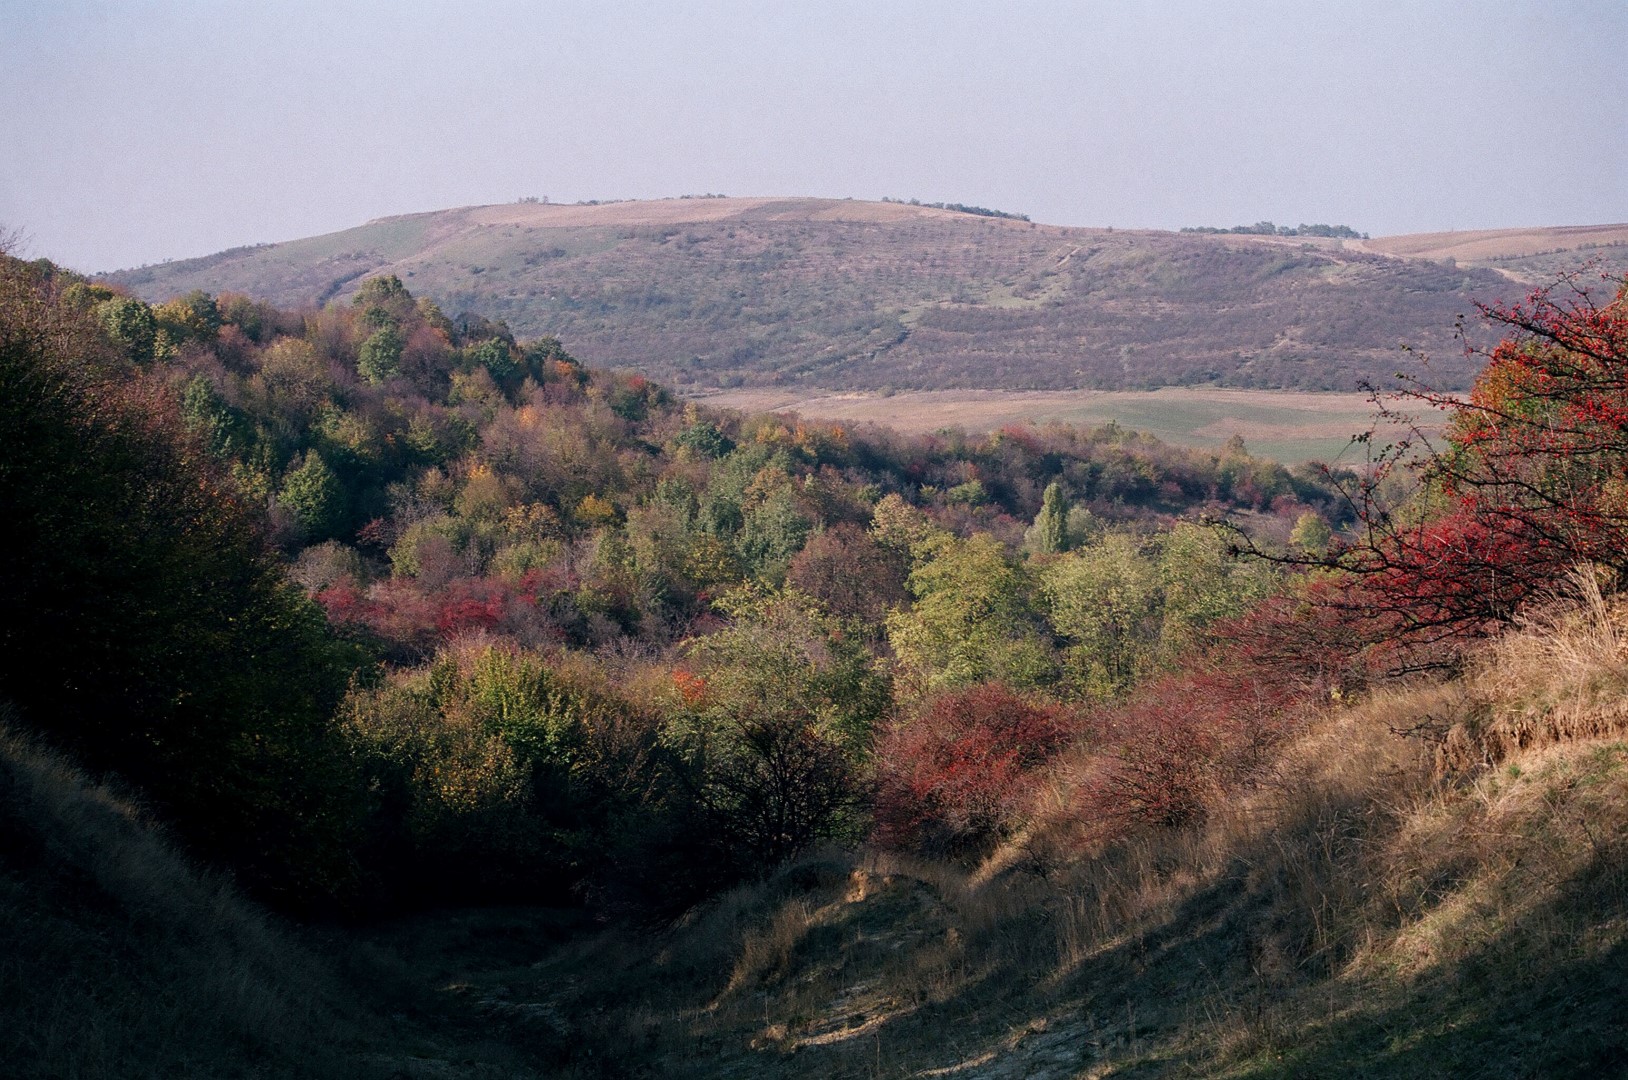 Valea Ichelului văzută de pe dealul Cupcii